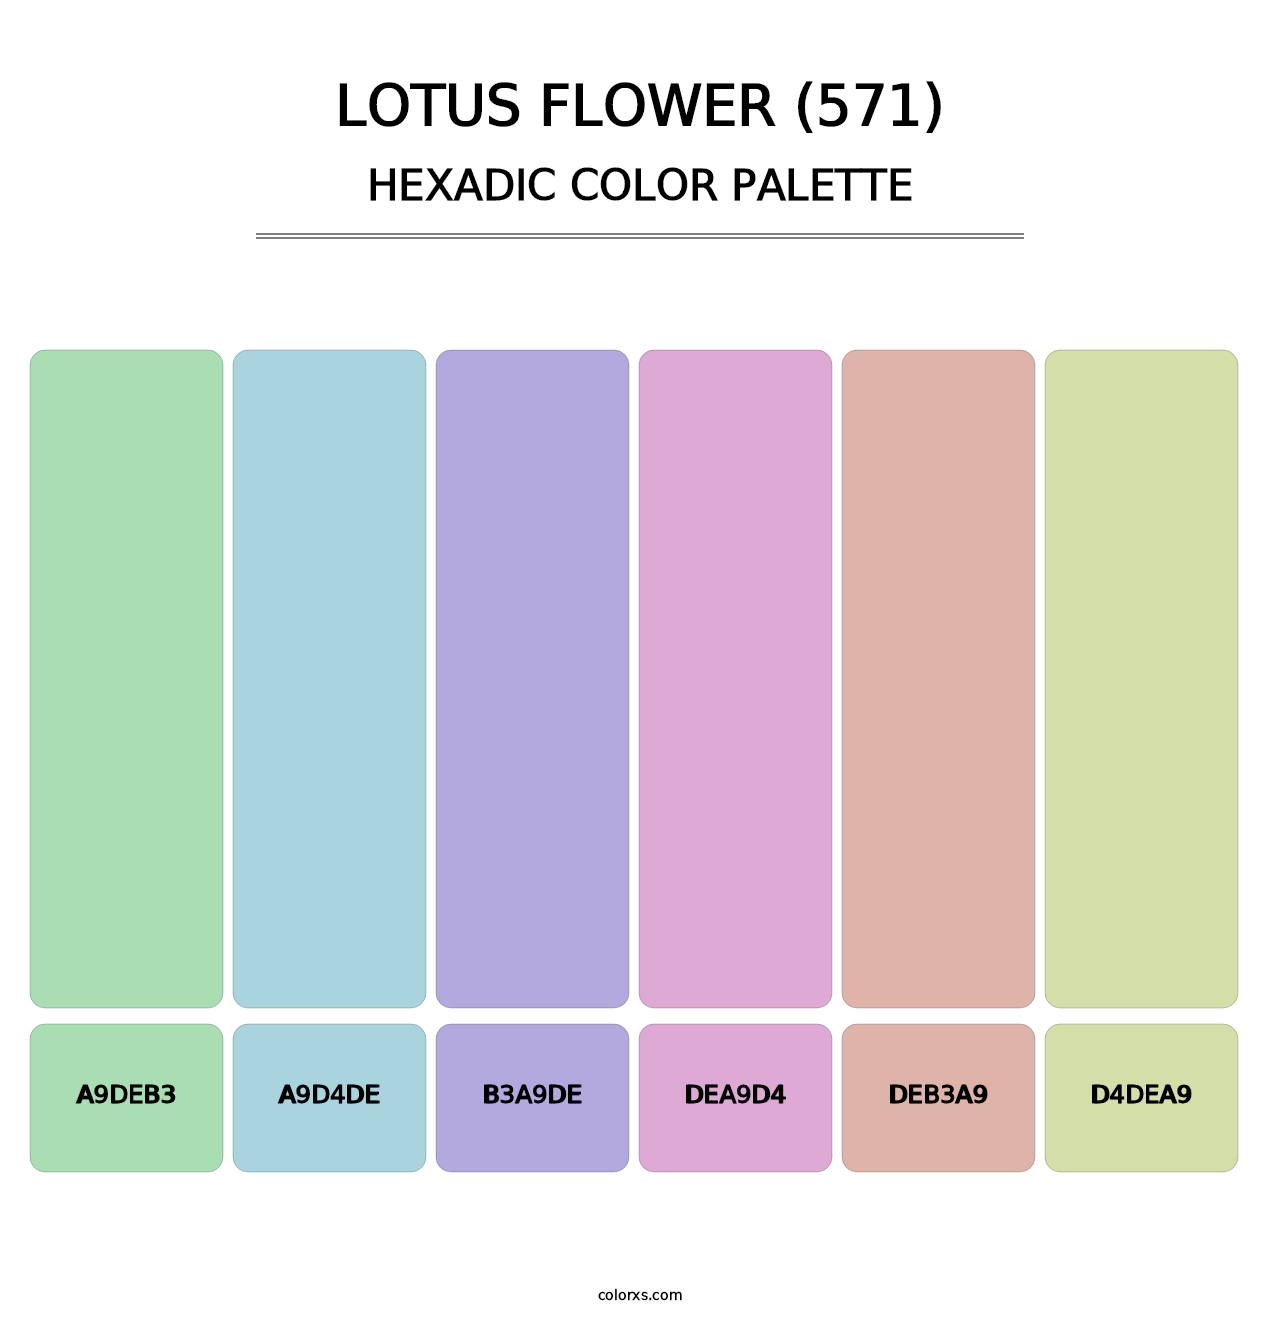 Lotus Flower (571) - Hexadic Color Palette